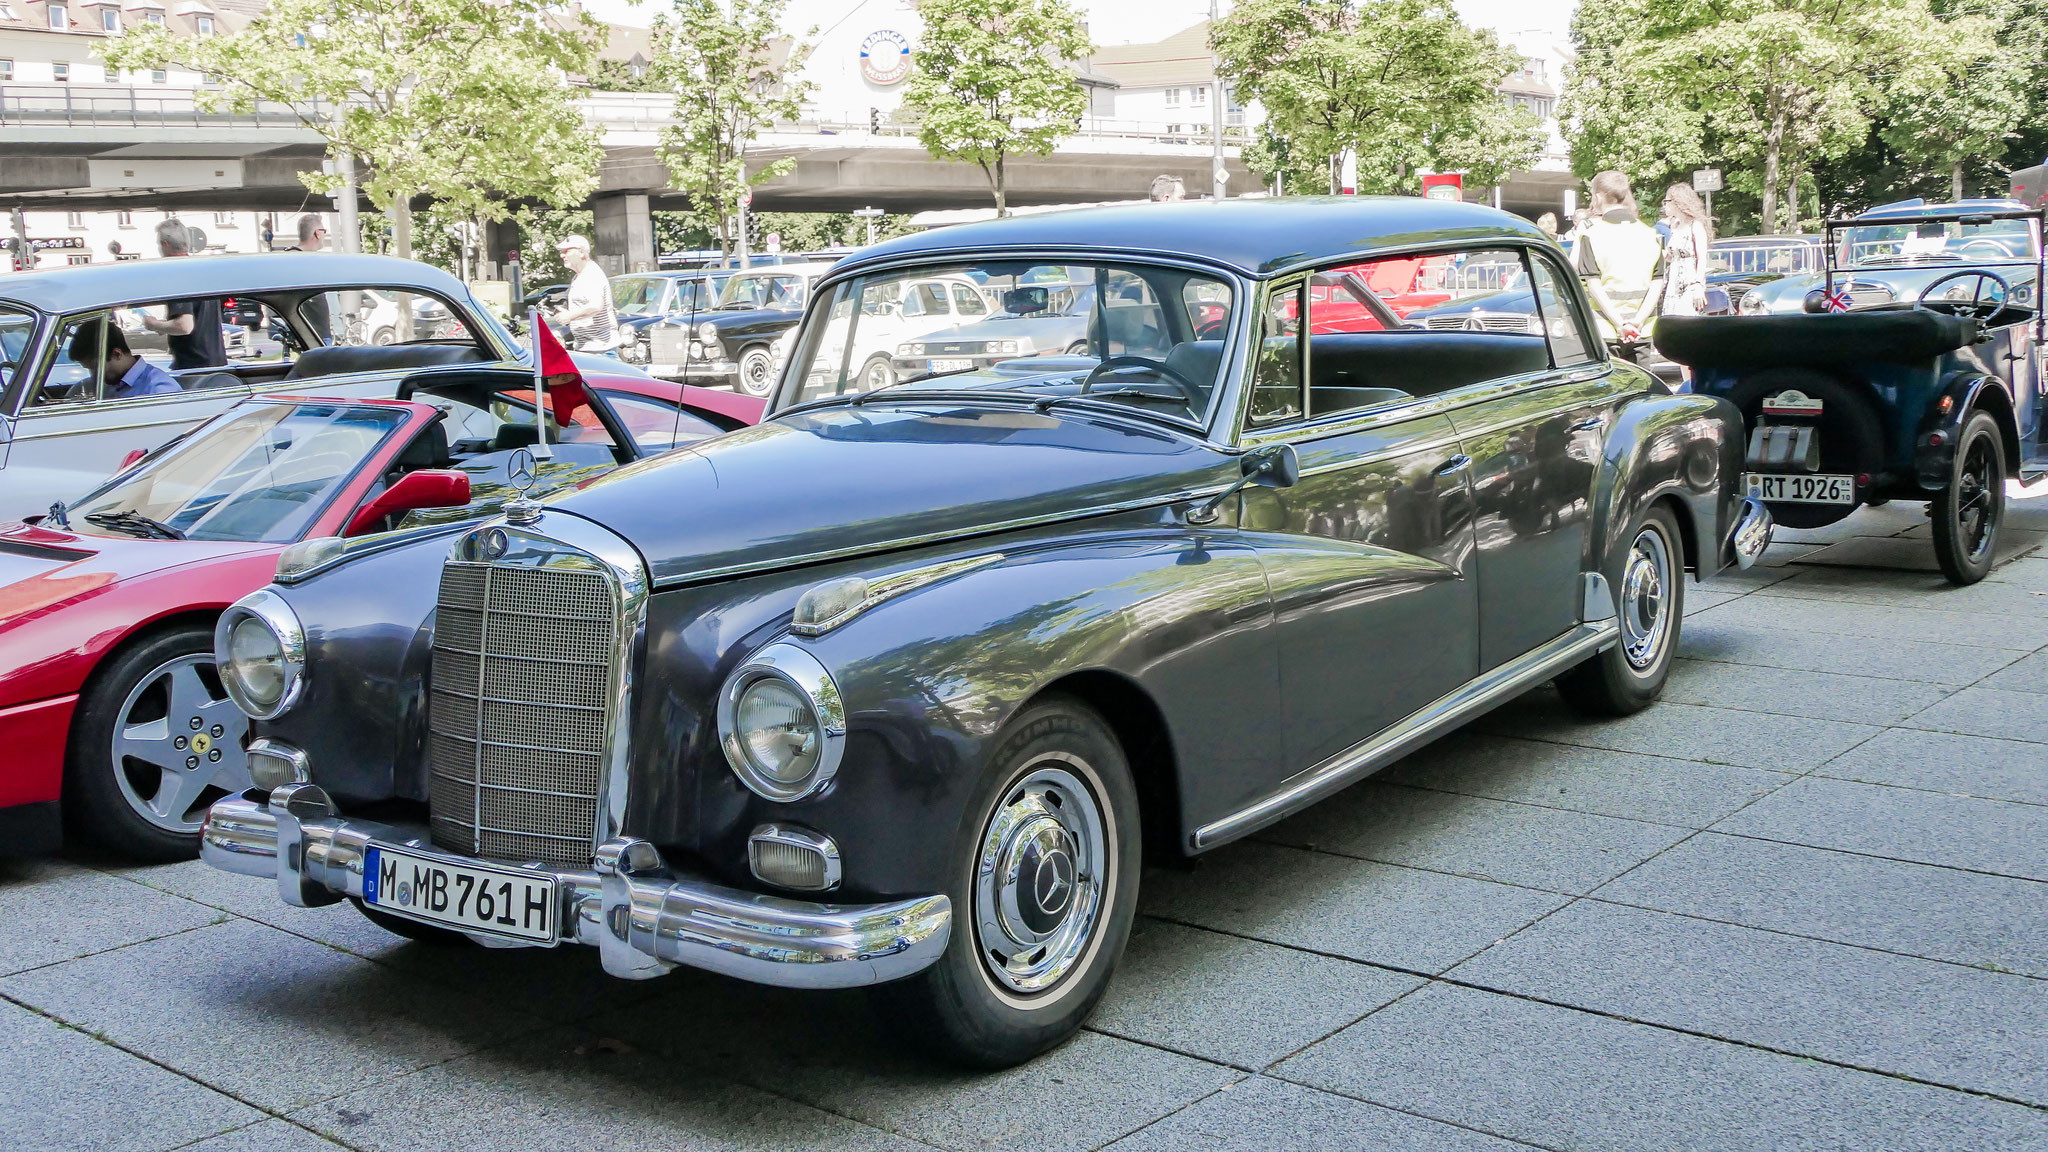 Mercedes 300 Adenauer - M-MB761H